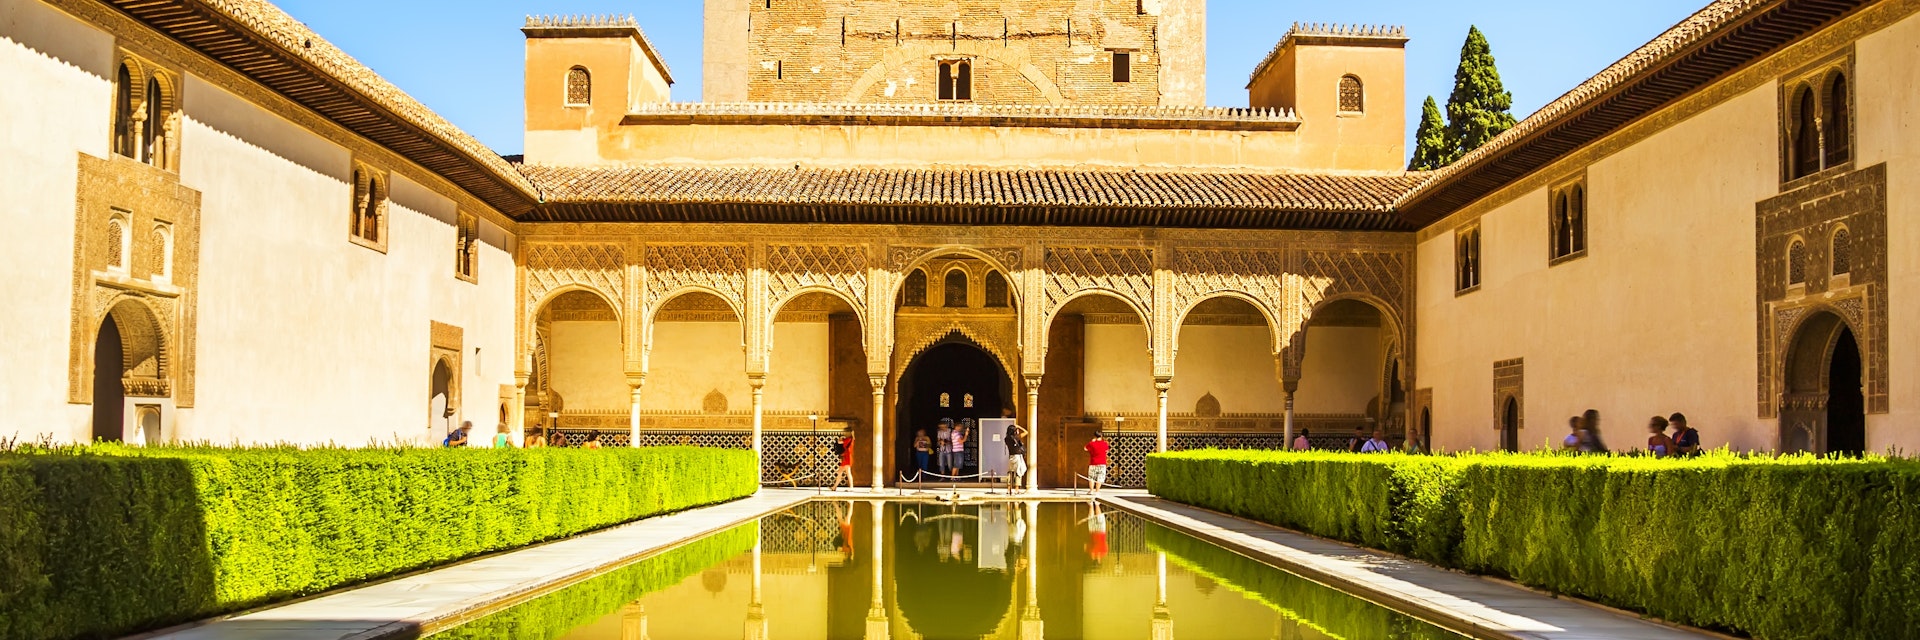 Courtyard of the Myrtles (Patio de los Arrayanes) in La Alhambra, Granada, Spain.